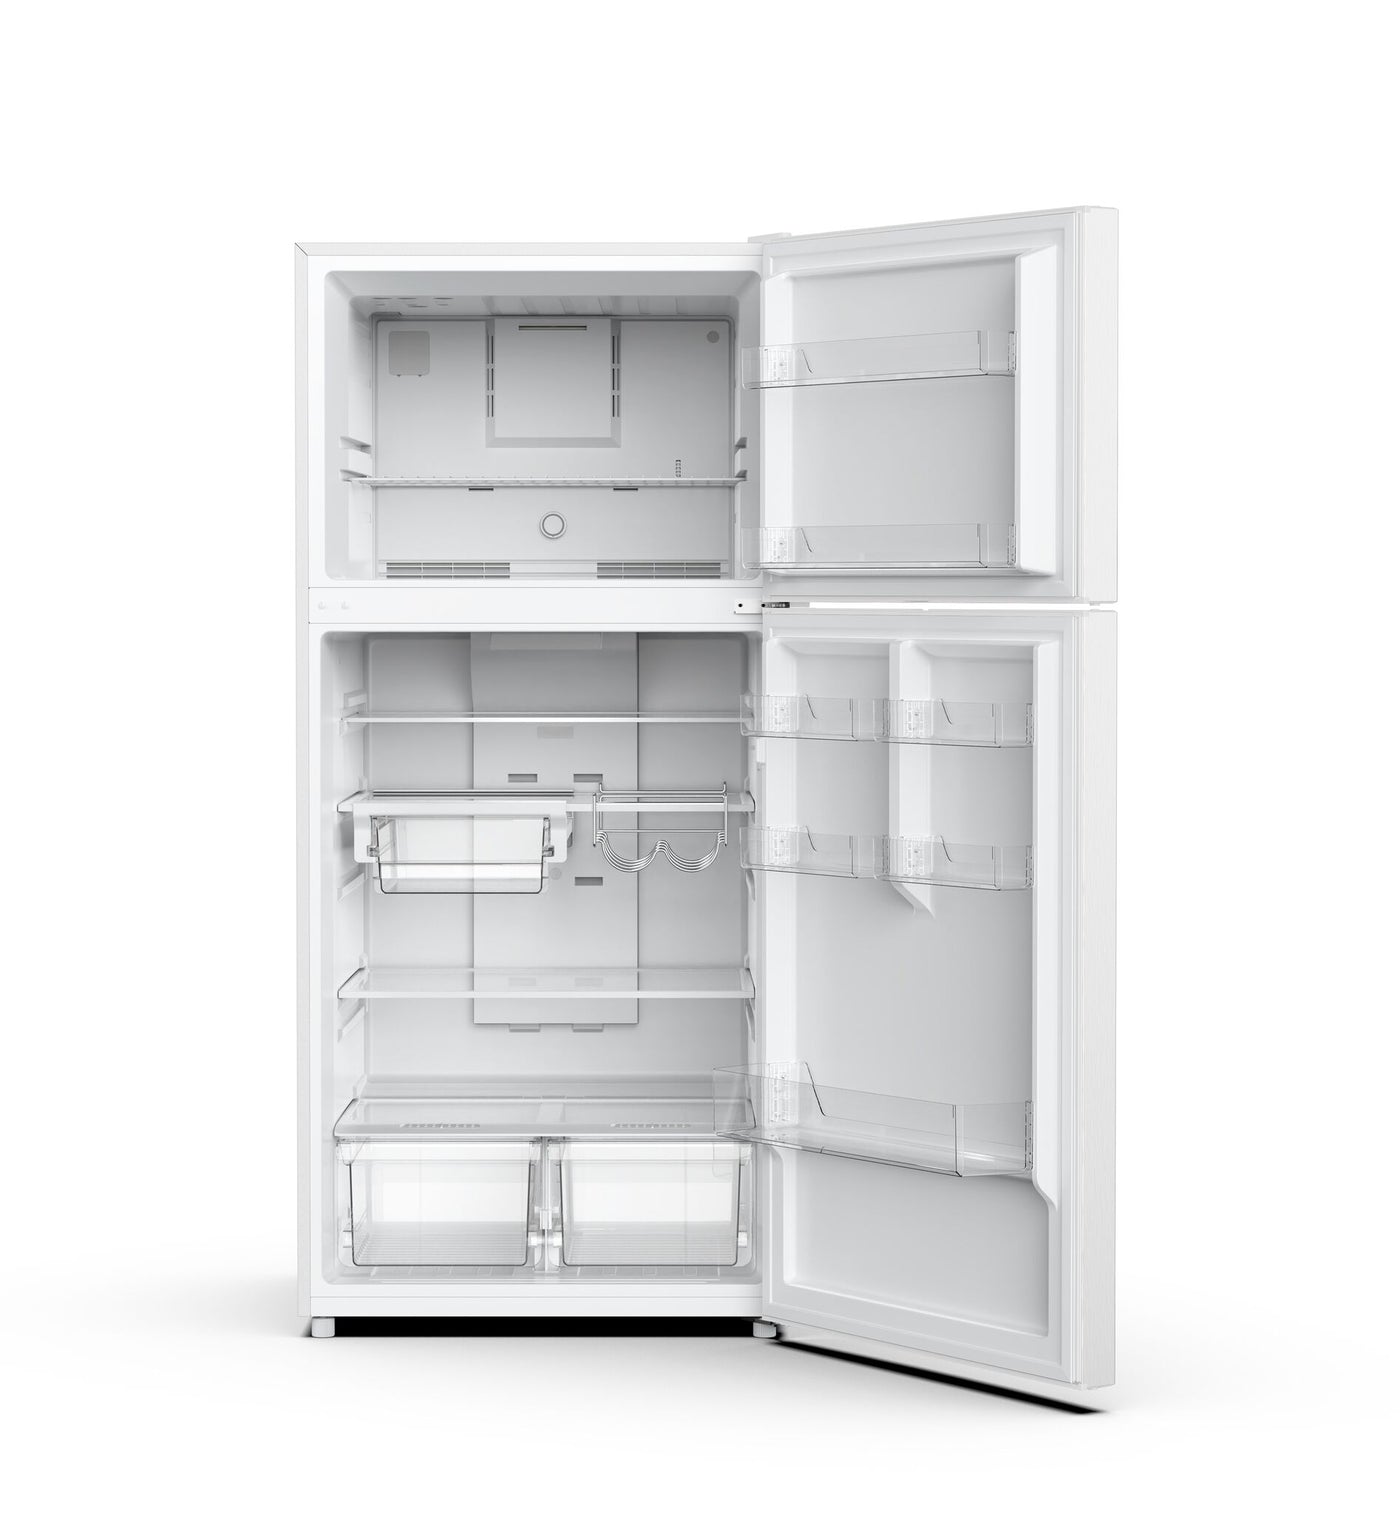 Marathon White Top Mount Refrigerator (18.0 cu.ft) - MFF184W